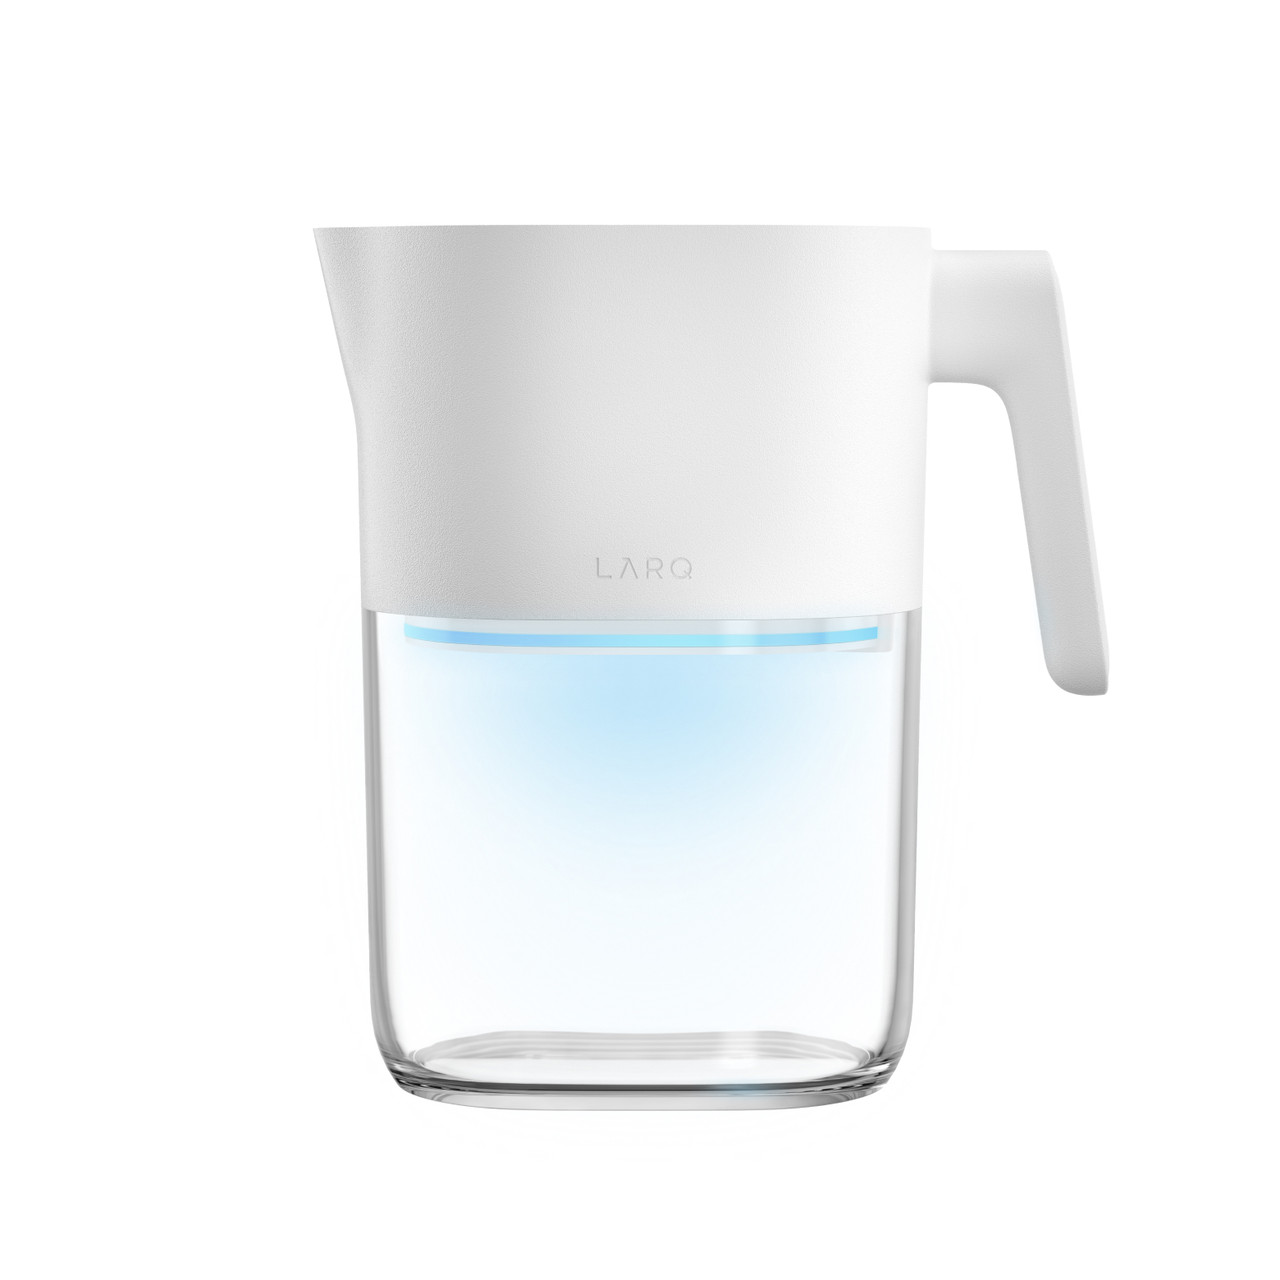 Carafe filtrante d'eau Xiaomi Viomi Water Filter Pitcher (UV)